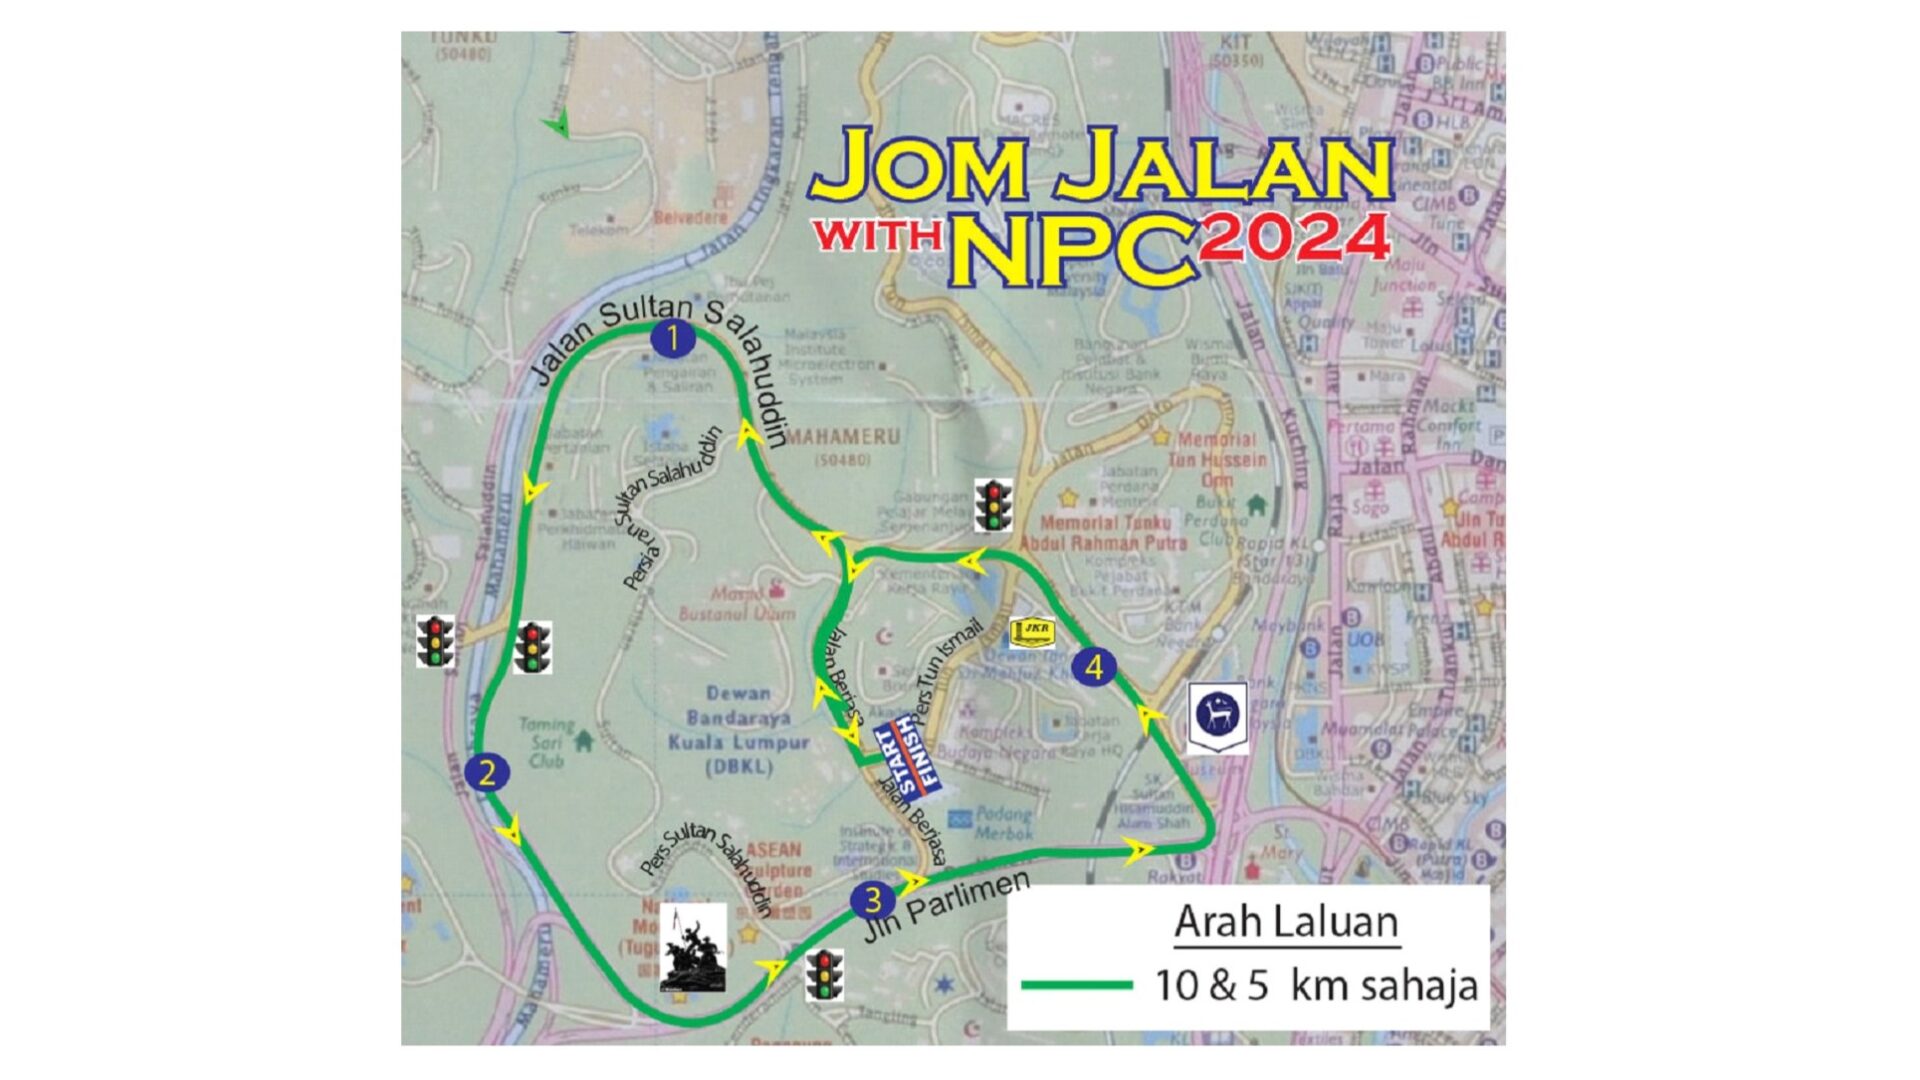 Jom Jalan with NPC: Acara jalan kaki yang menjanjikan kecergasan, persahabatan dan keseronokan